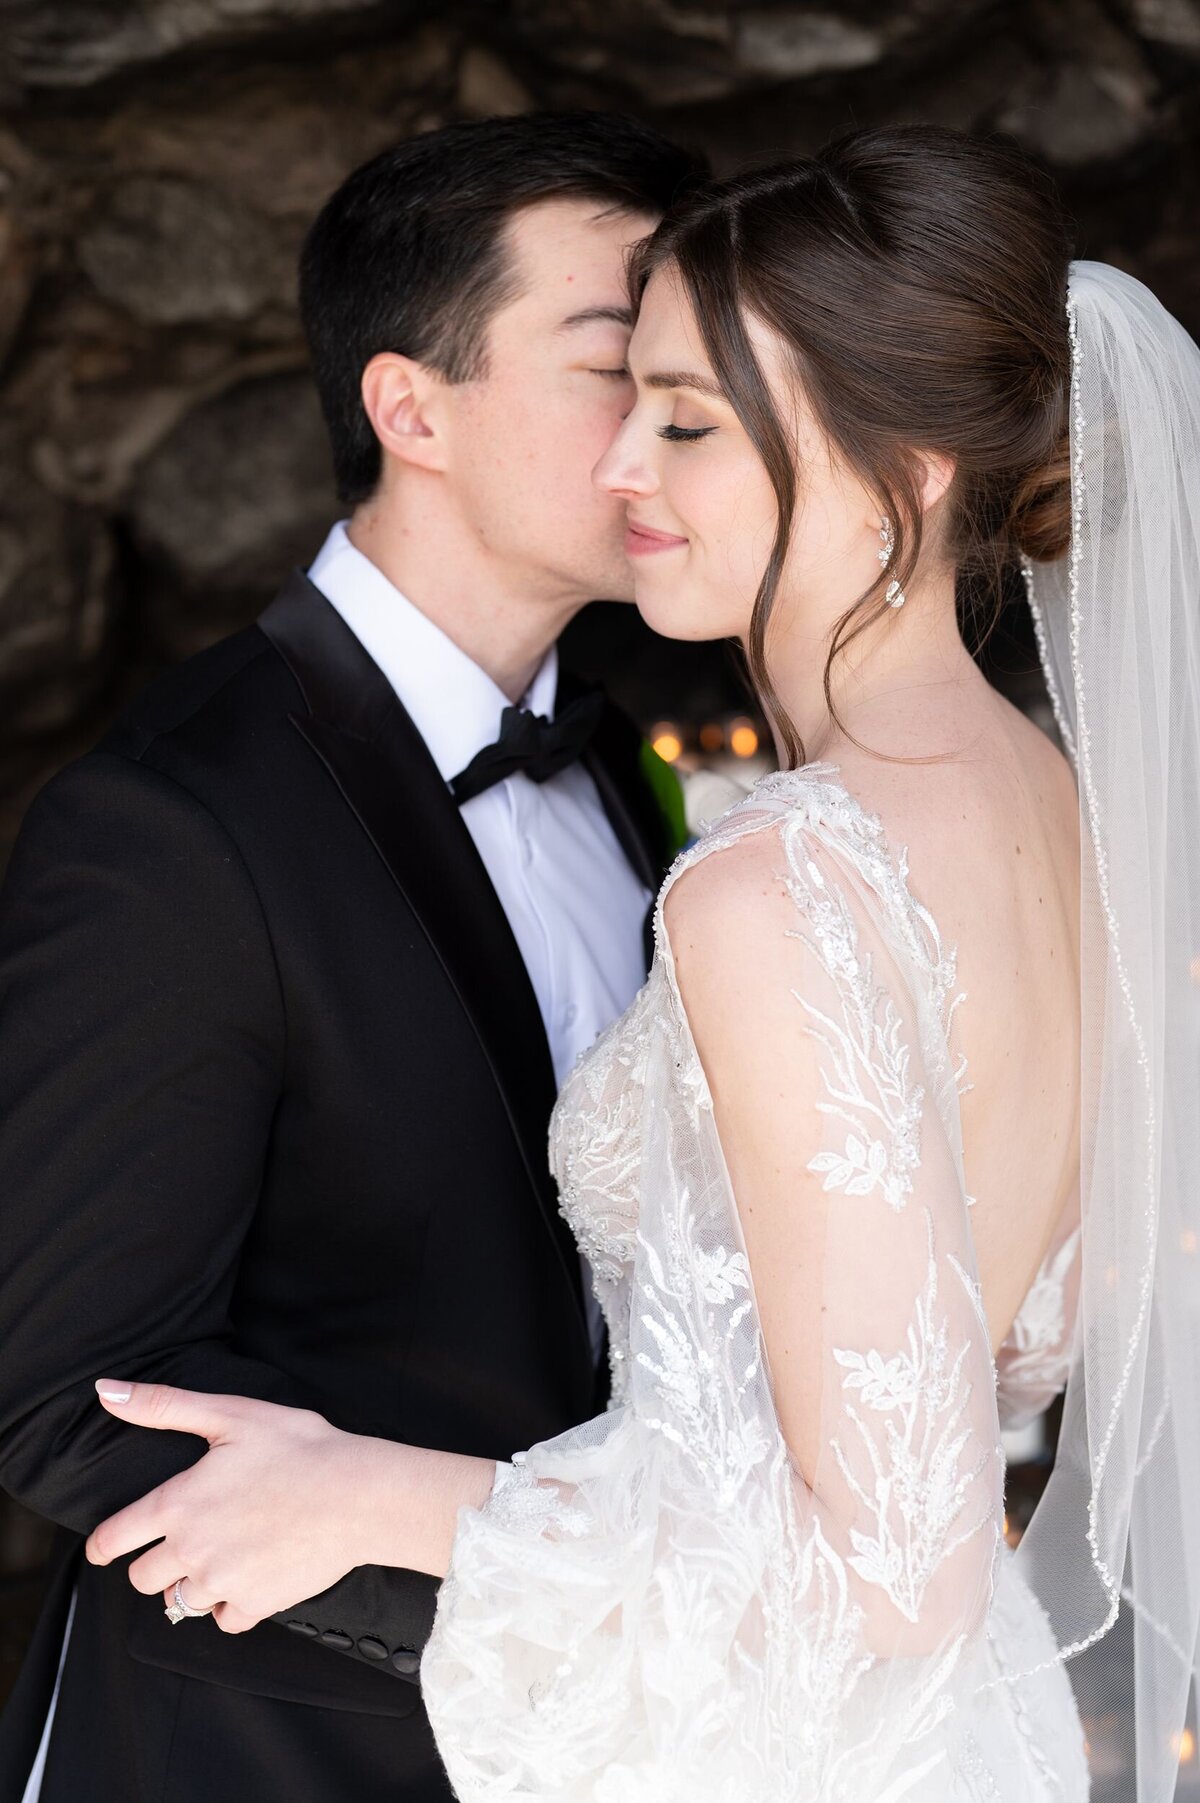 Groom kissing bride on cheek